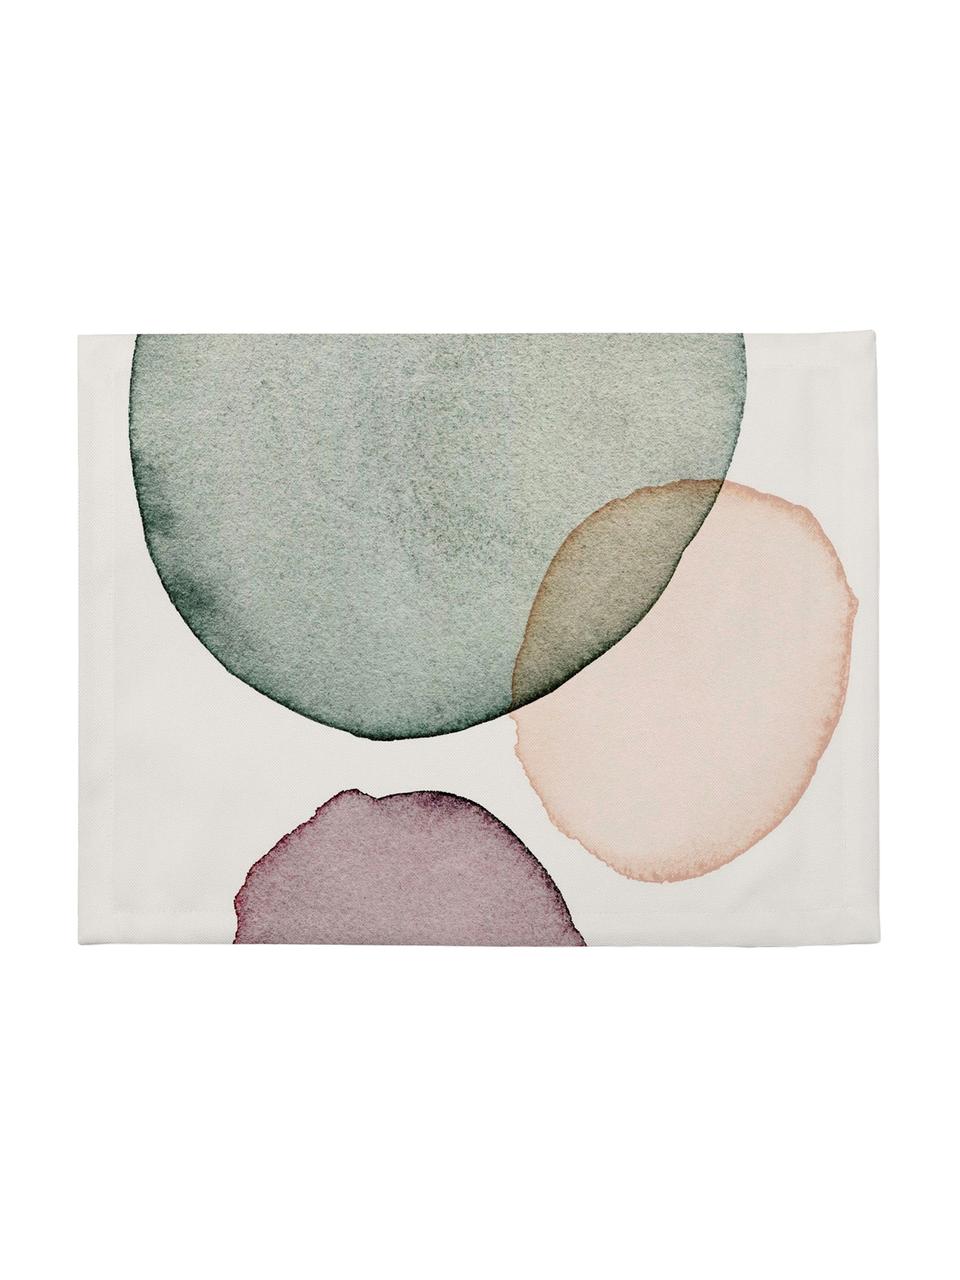 Podkładka Calm, 4 szt., Poliester, Biały, zielony, lila, odcienie łososiowego, S 35 x D 45 cm